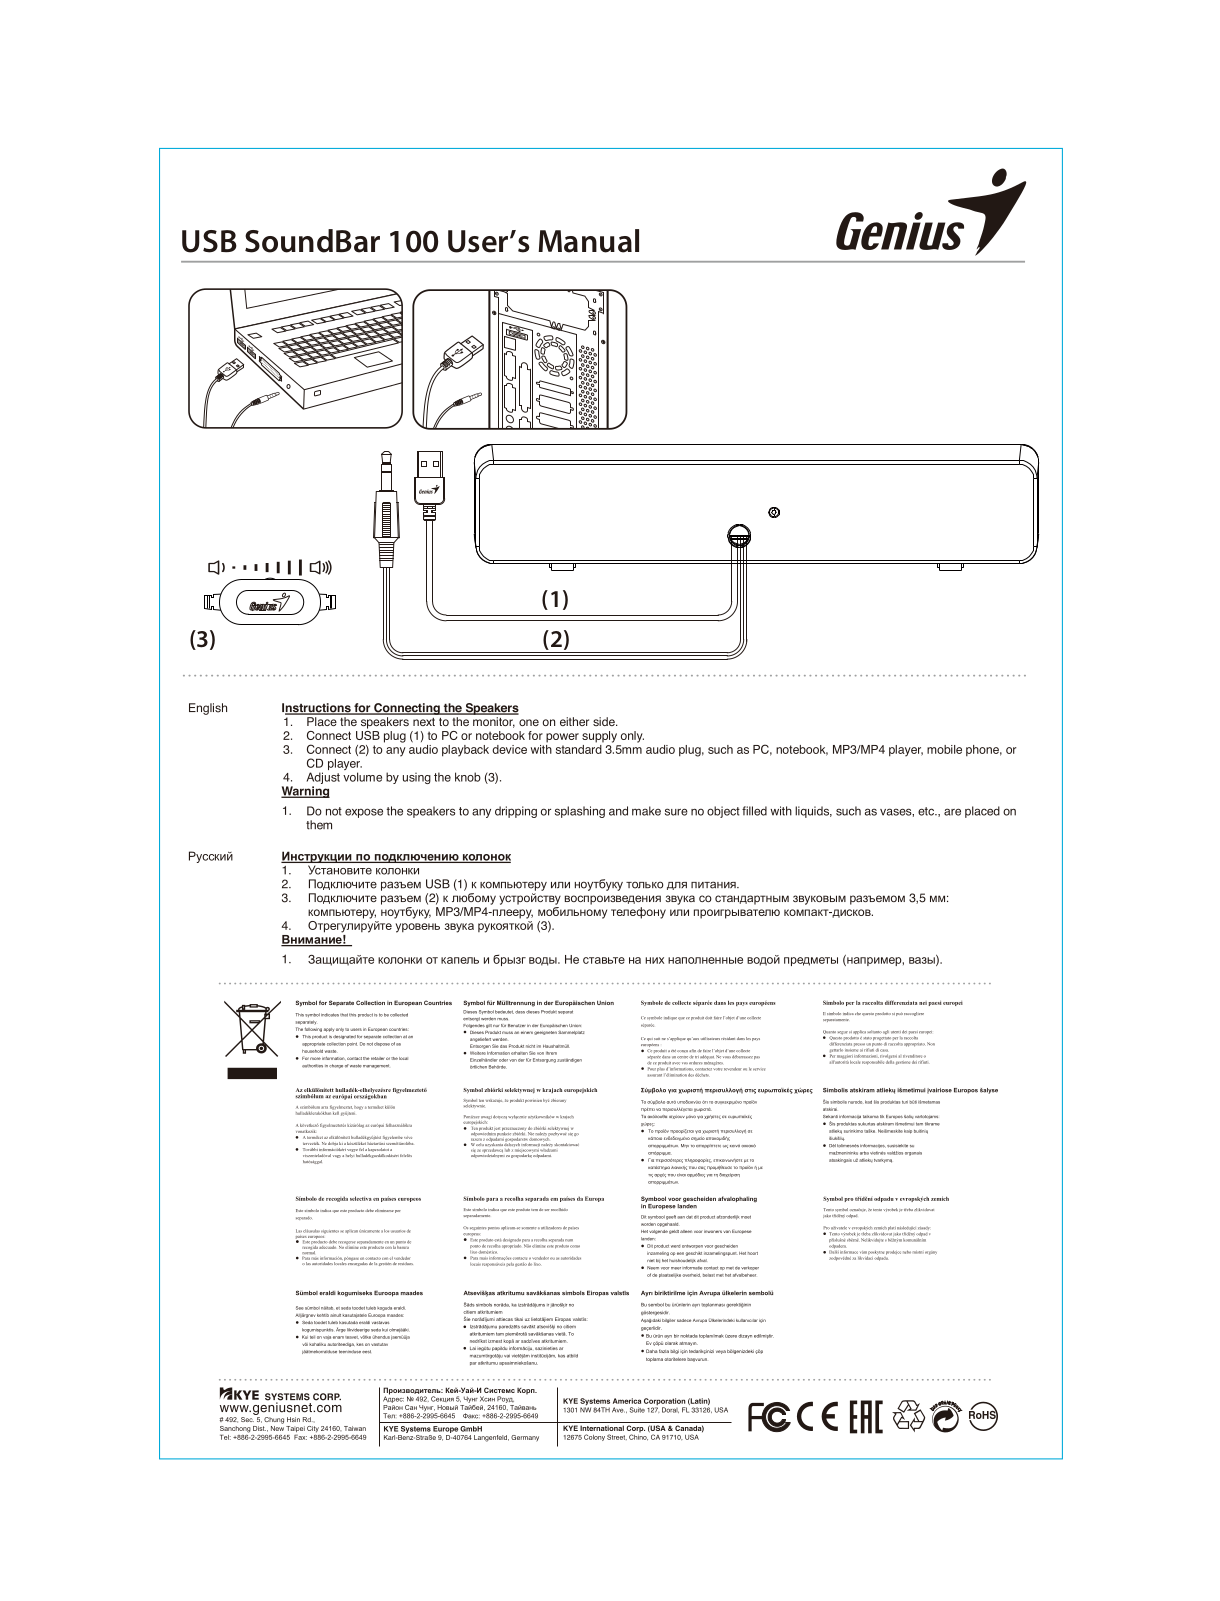 Genius USB SoundBar 100 User Manual